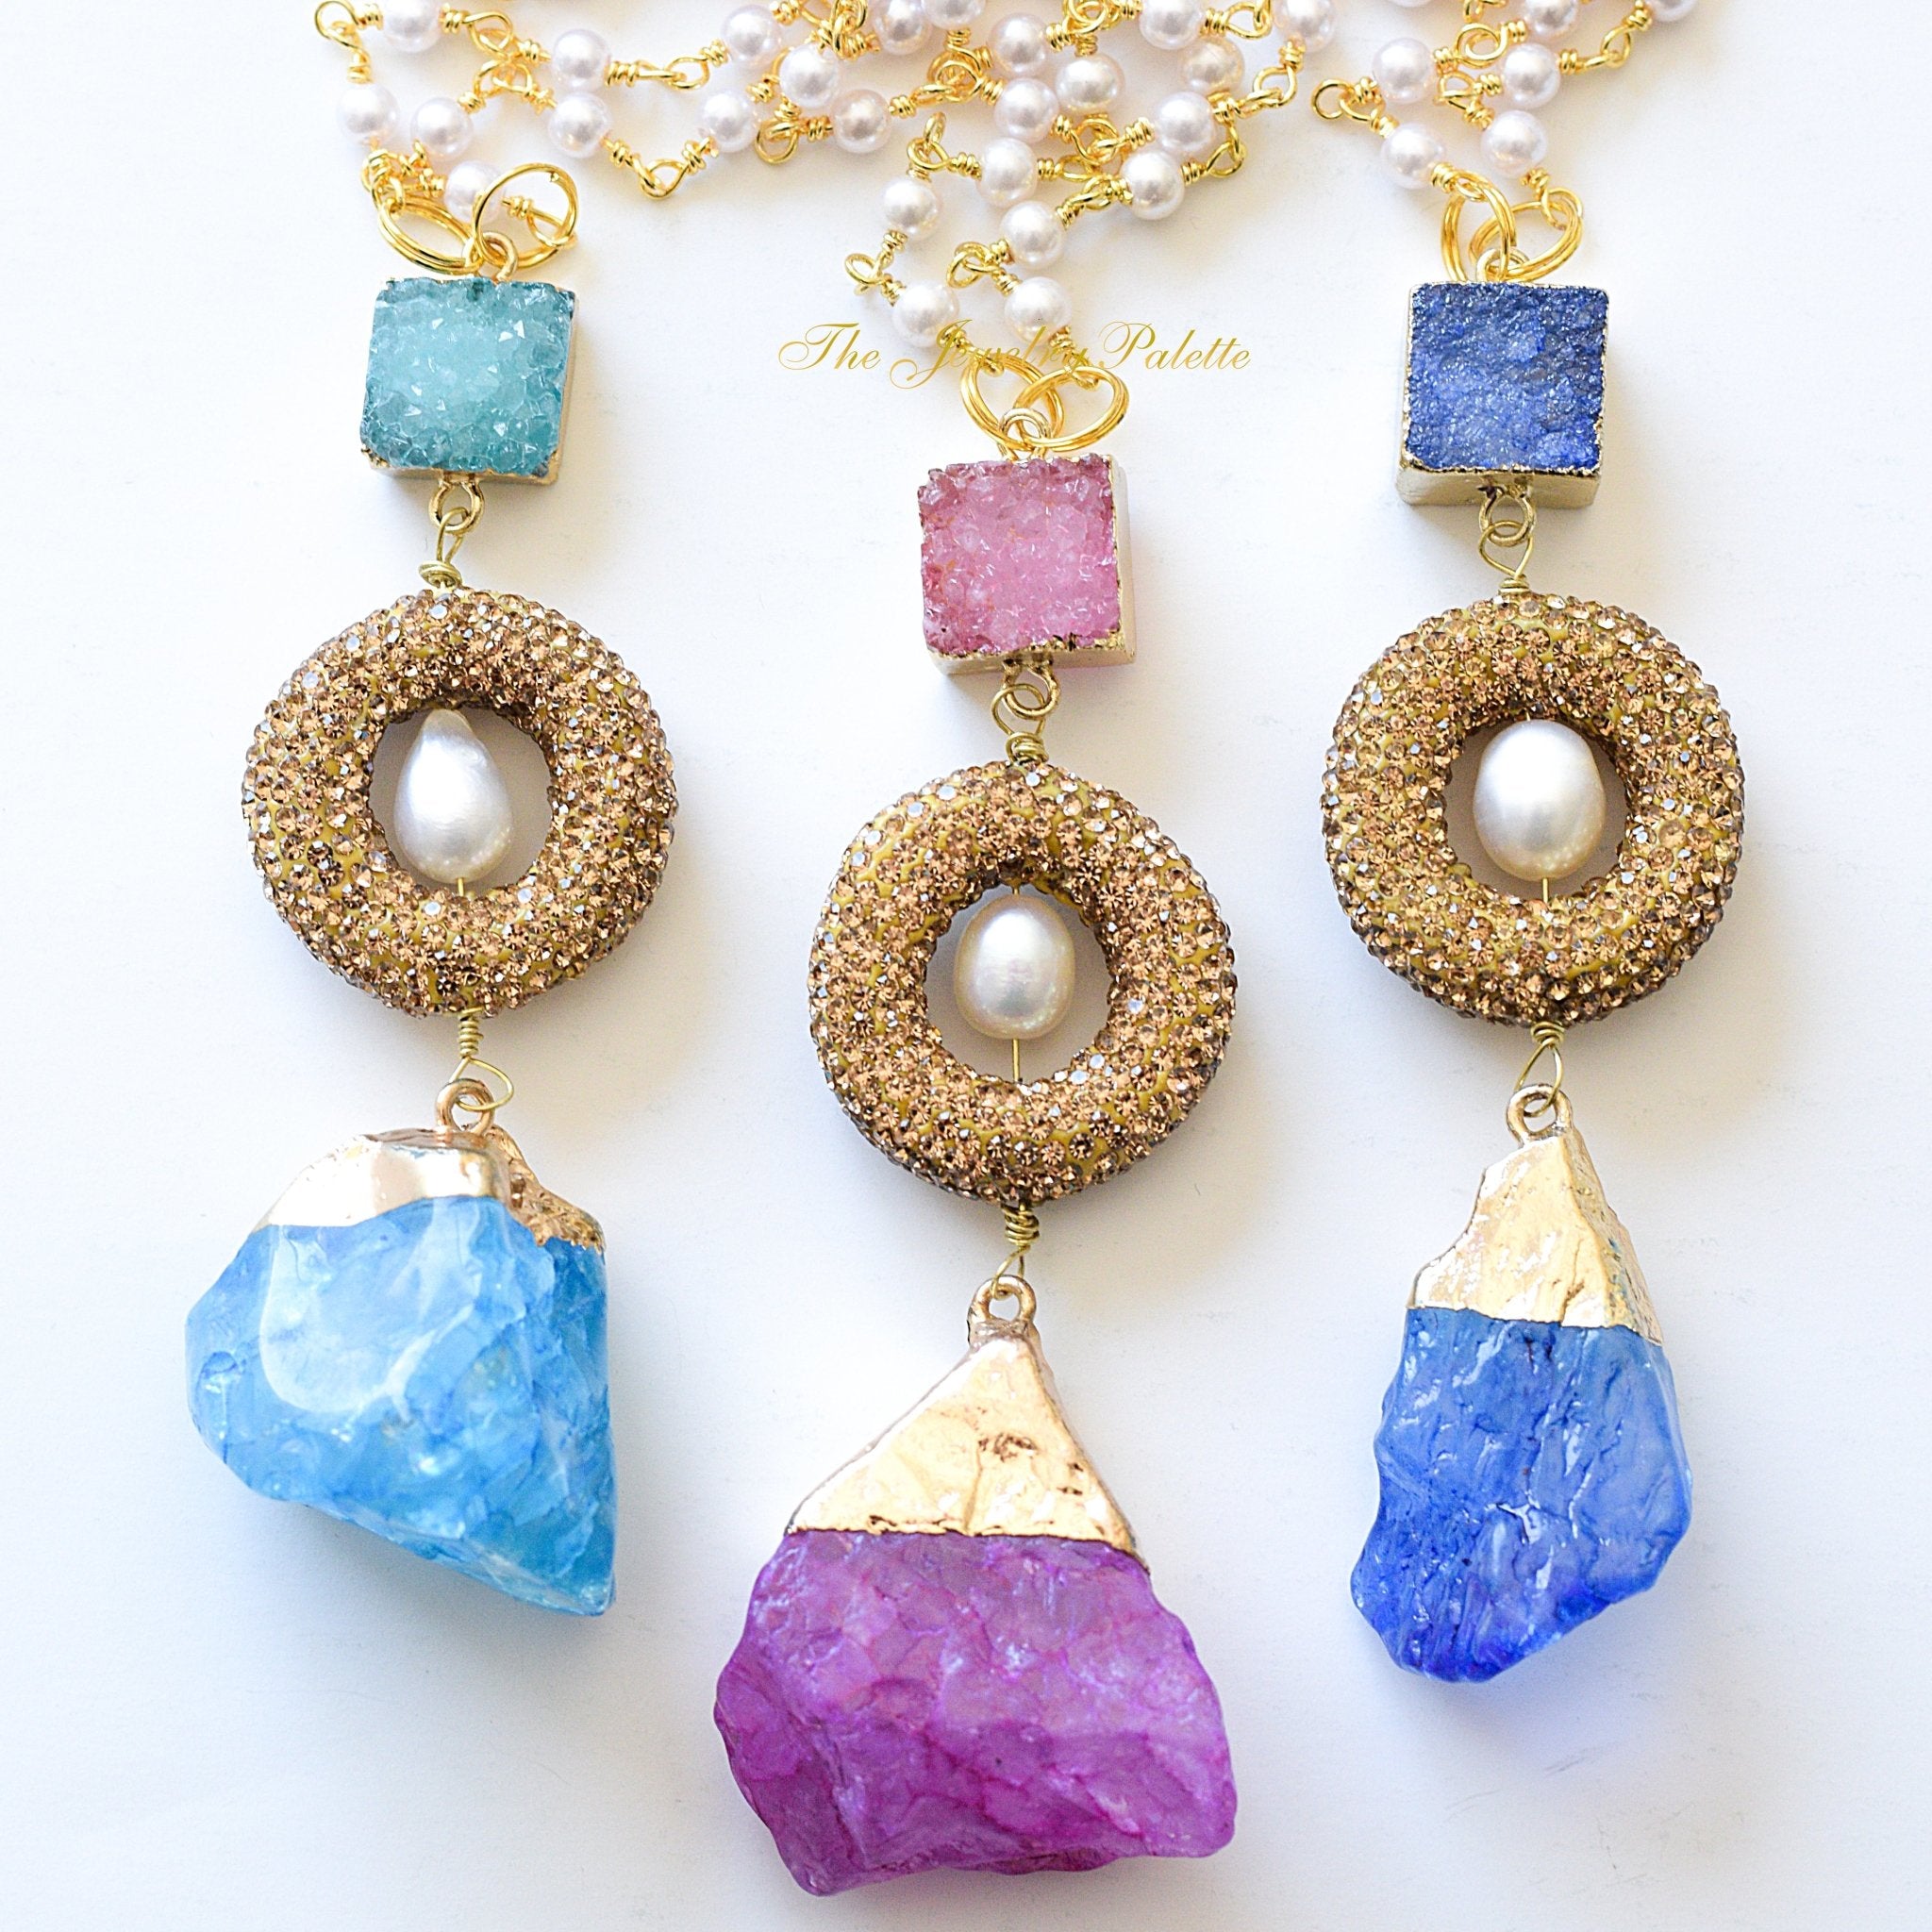 NWOT Druzy Quartz Necklace & Earrings | Quartz necklace, Womens jewelry  necklace, Collar style necklace